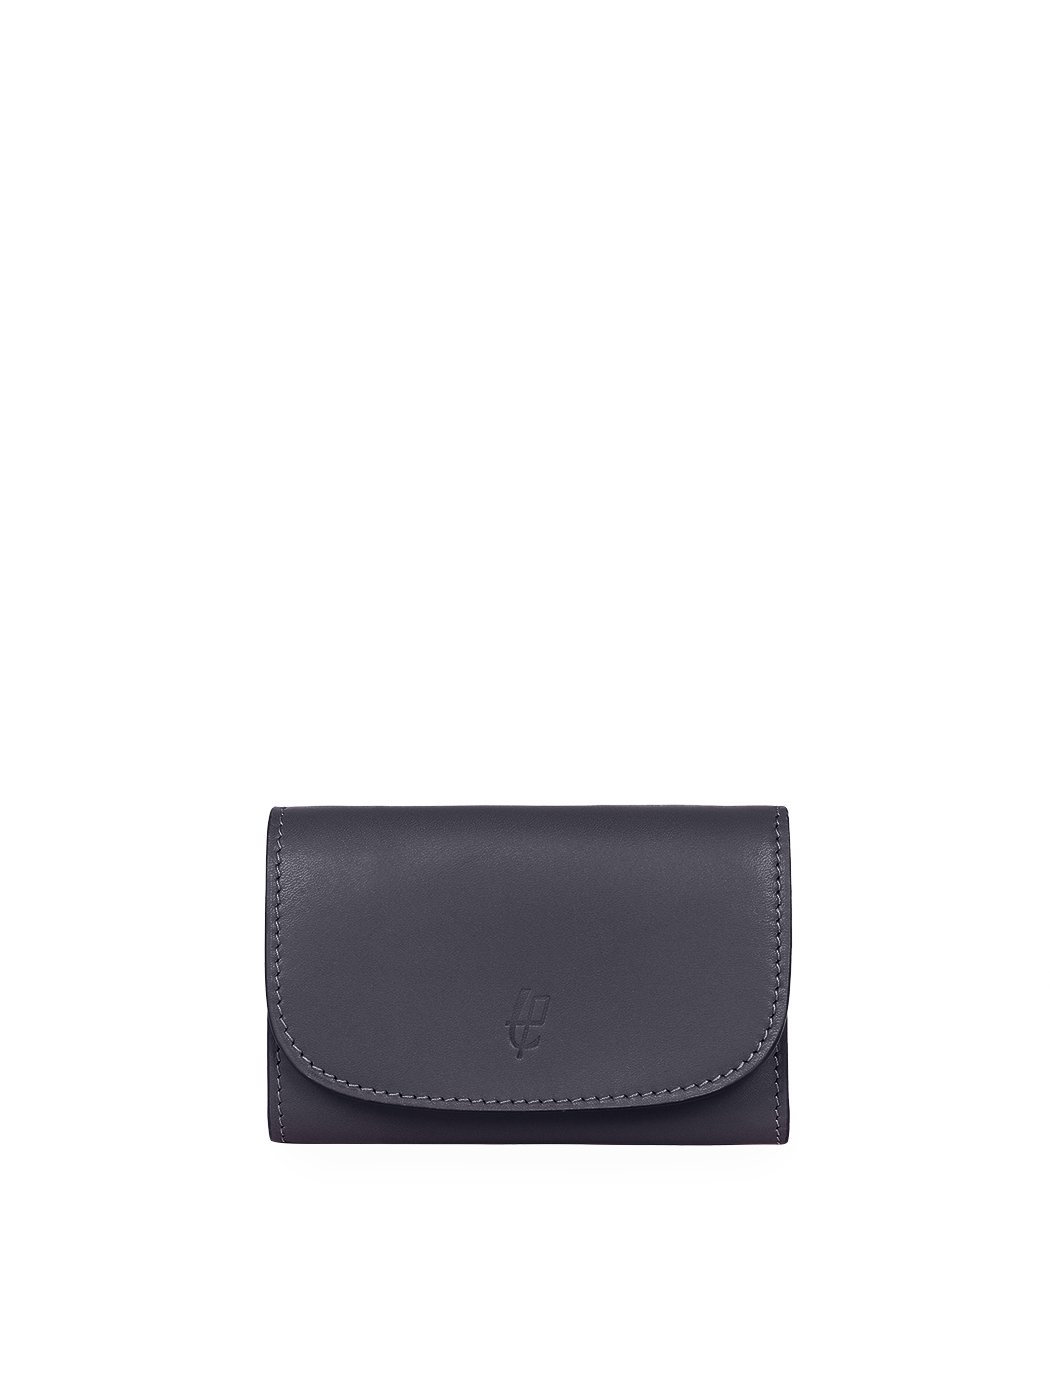 Компактный бумажник с карманом для мелочи на молнии синего цвета